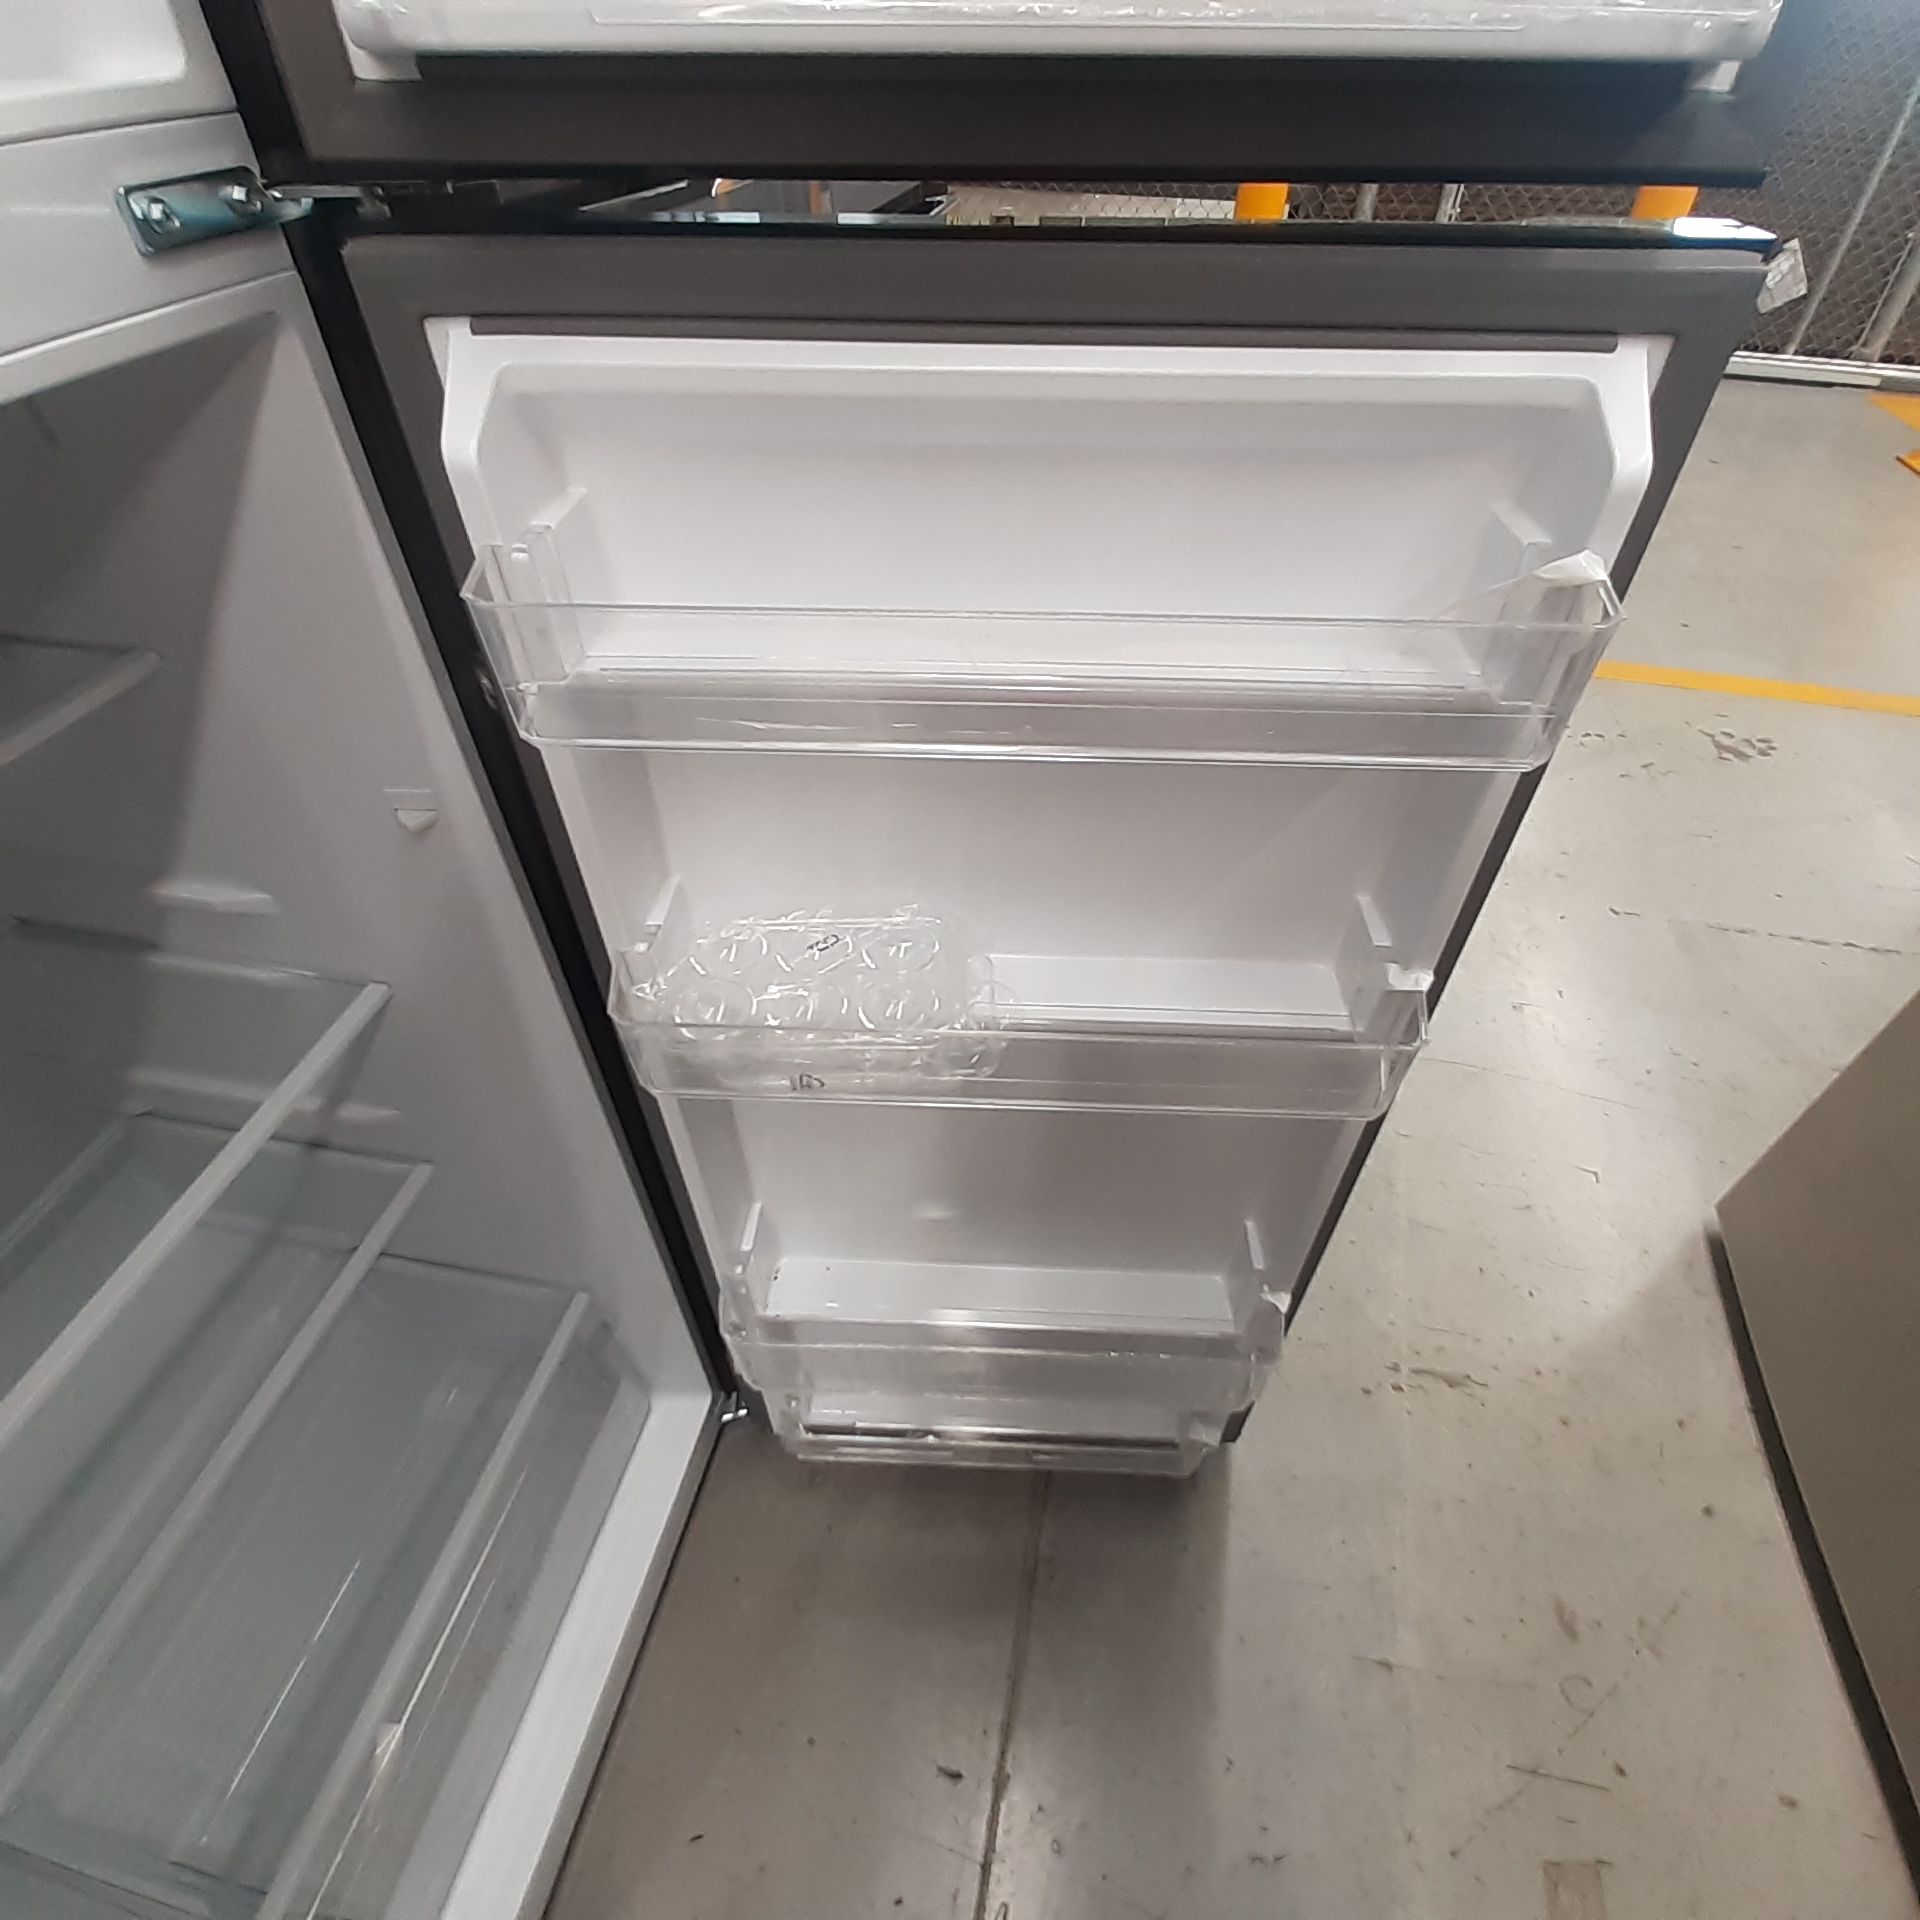 Lote De 2 Refrigeradores: 1 Refrigerador Marca Mabe, 1 Refrigerador Marca Atvio, Distintos Modelos - Image 22 of 23